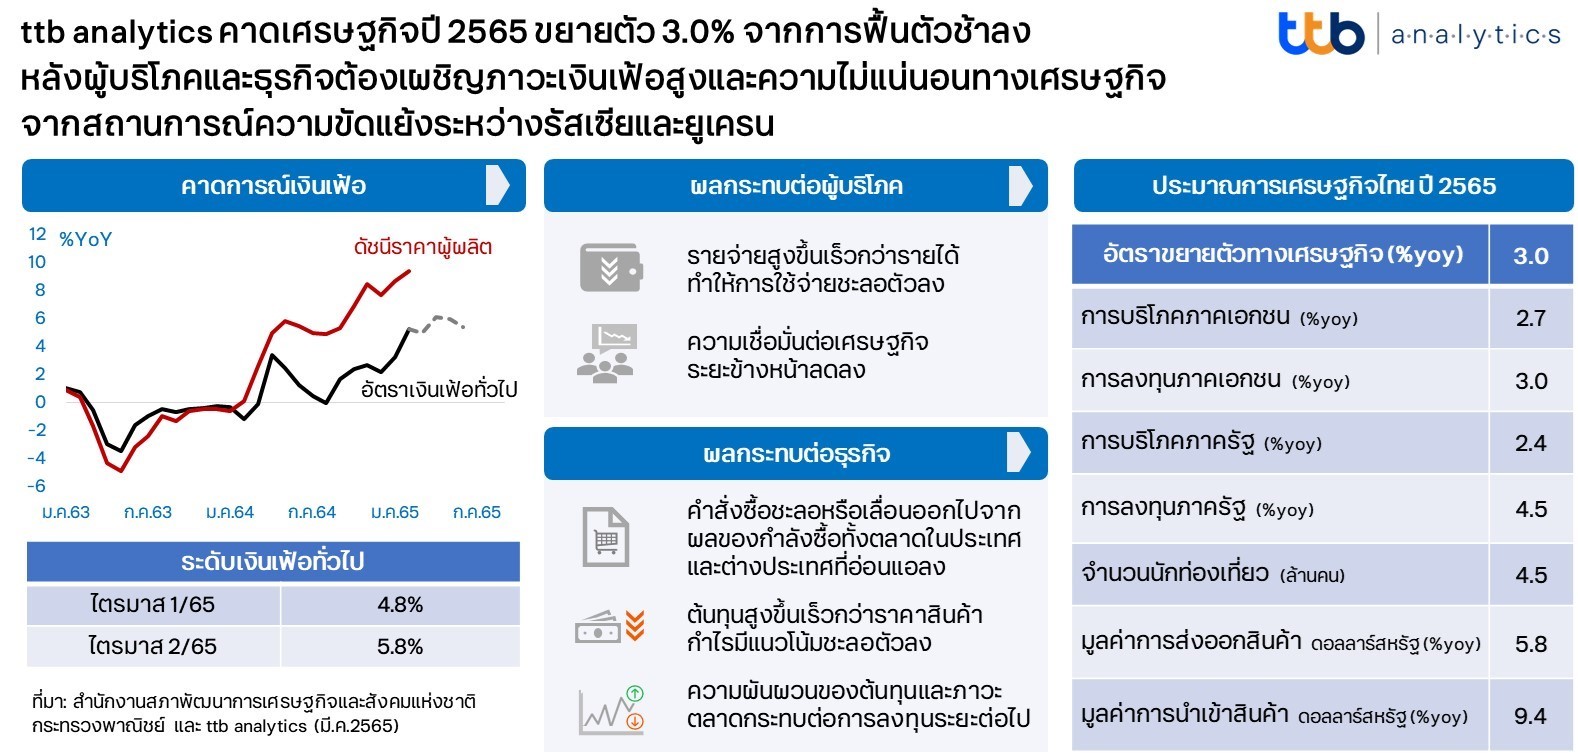 ttb analytics ประเมินเศรษฐกิจไทยเติบโต 3.0%